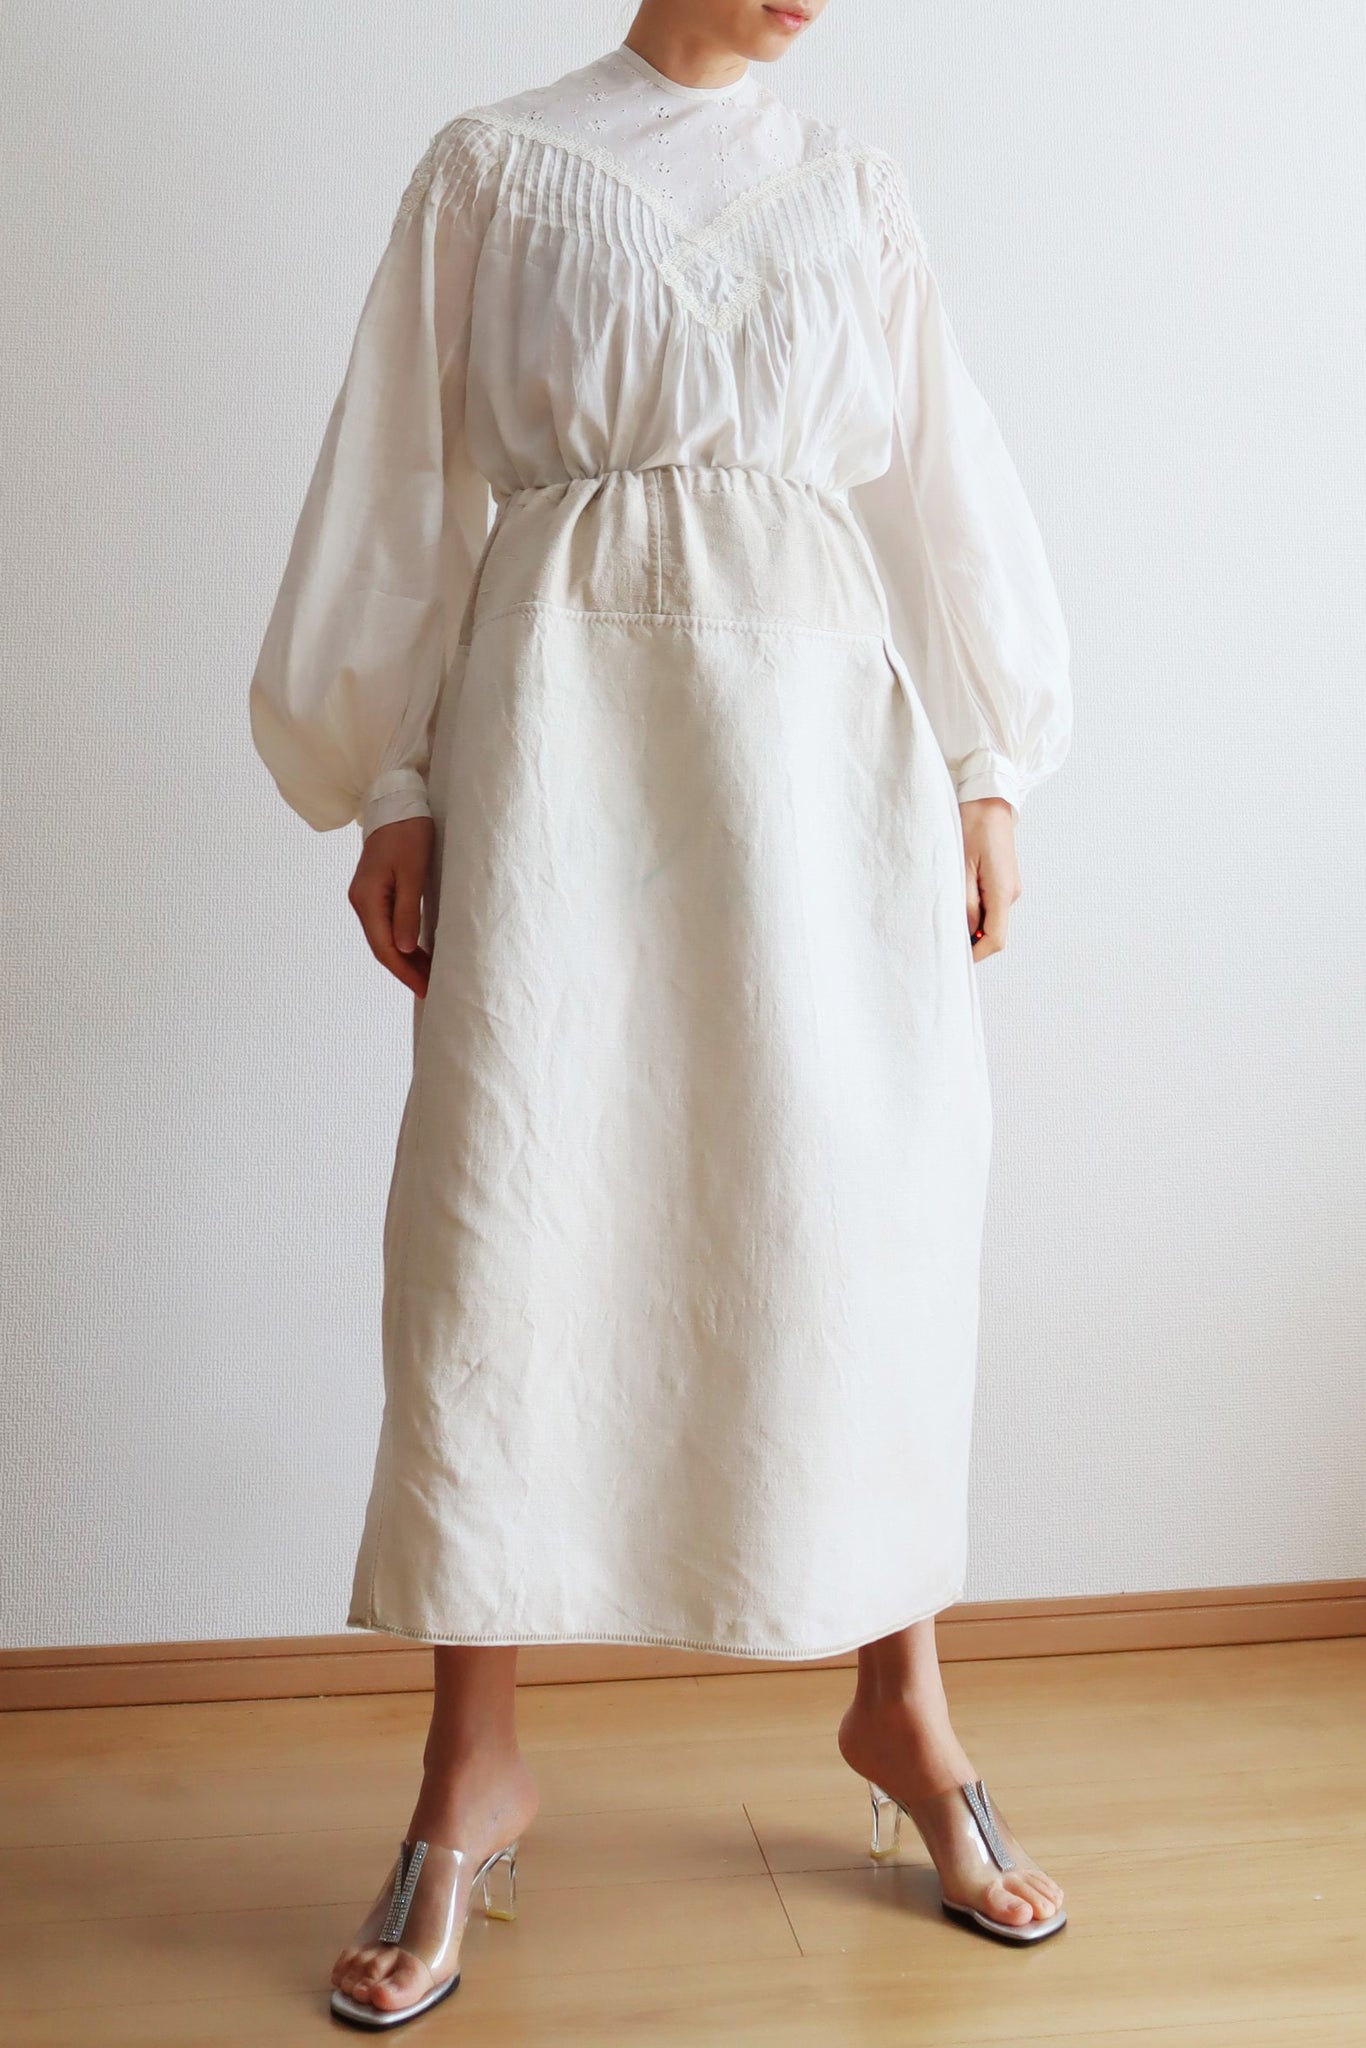 1900s Homespun Linen Sack Skirt